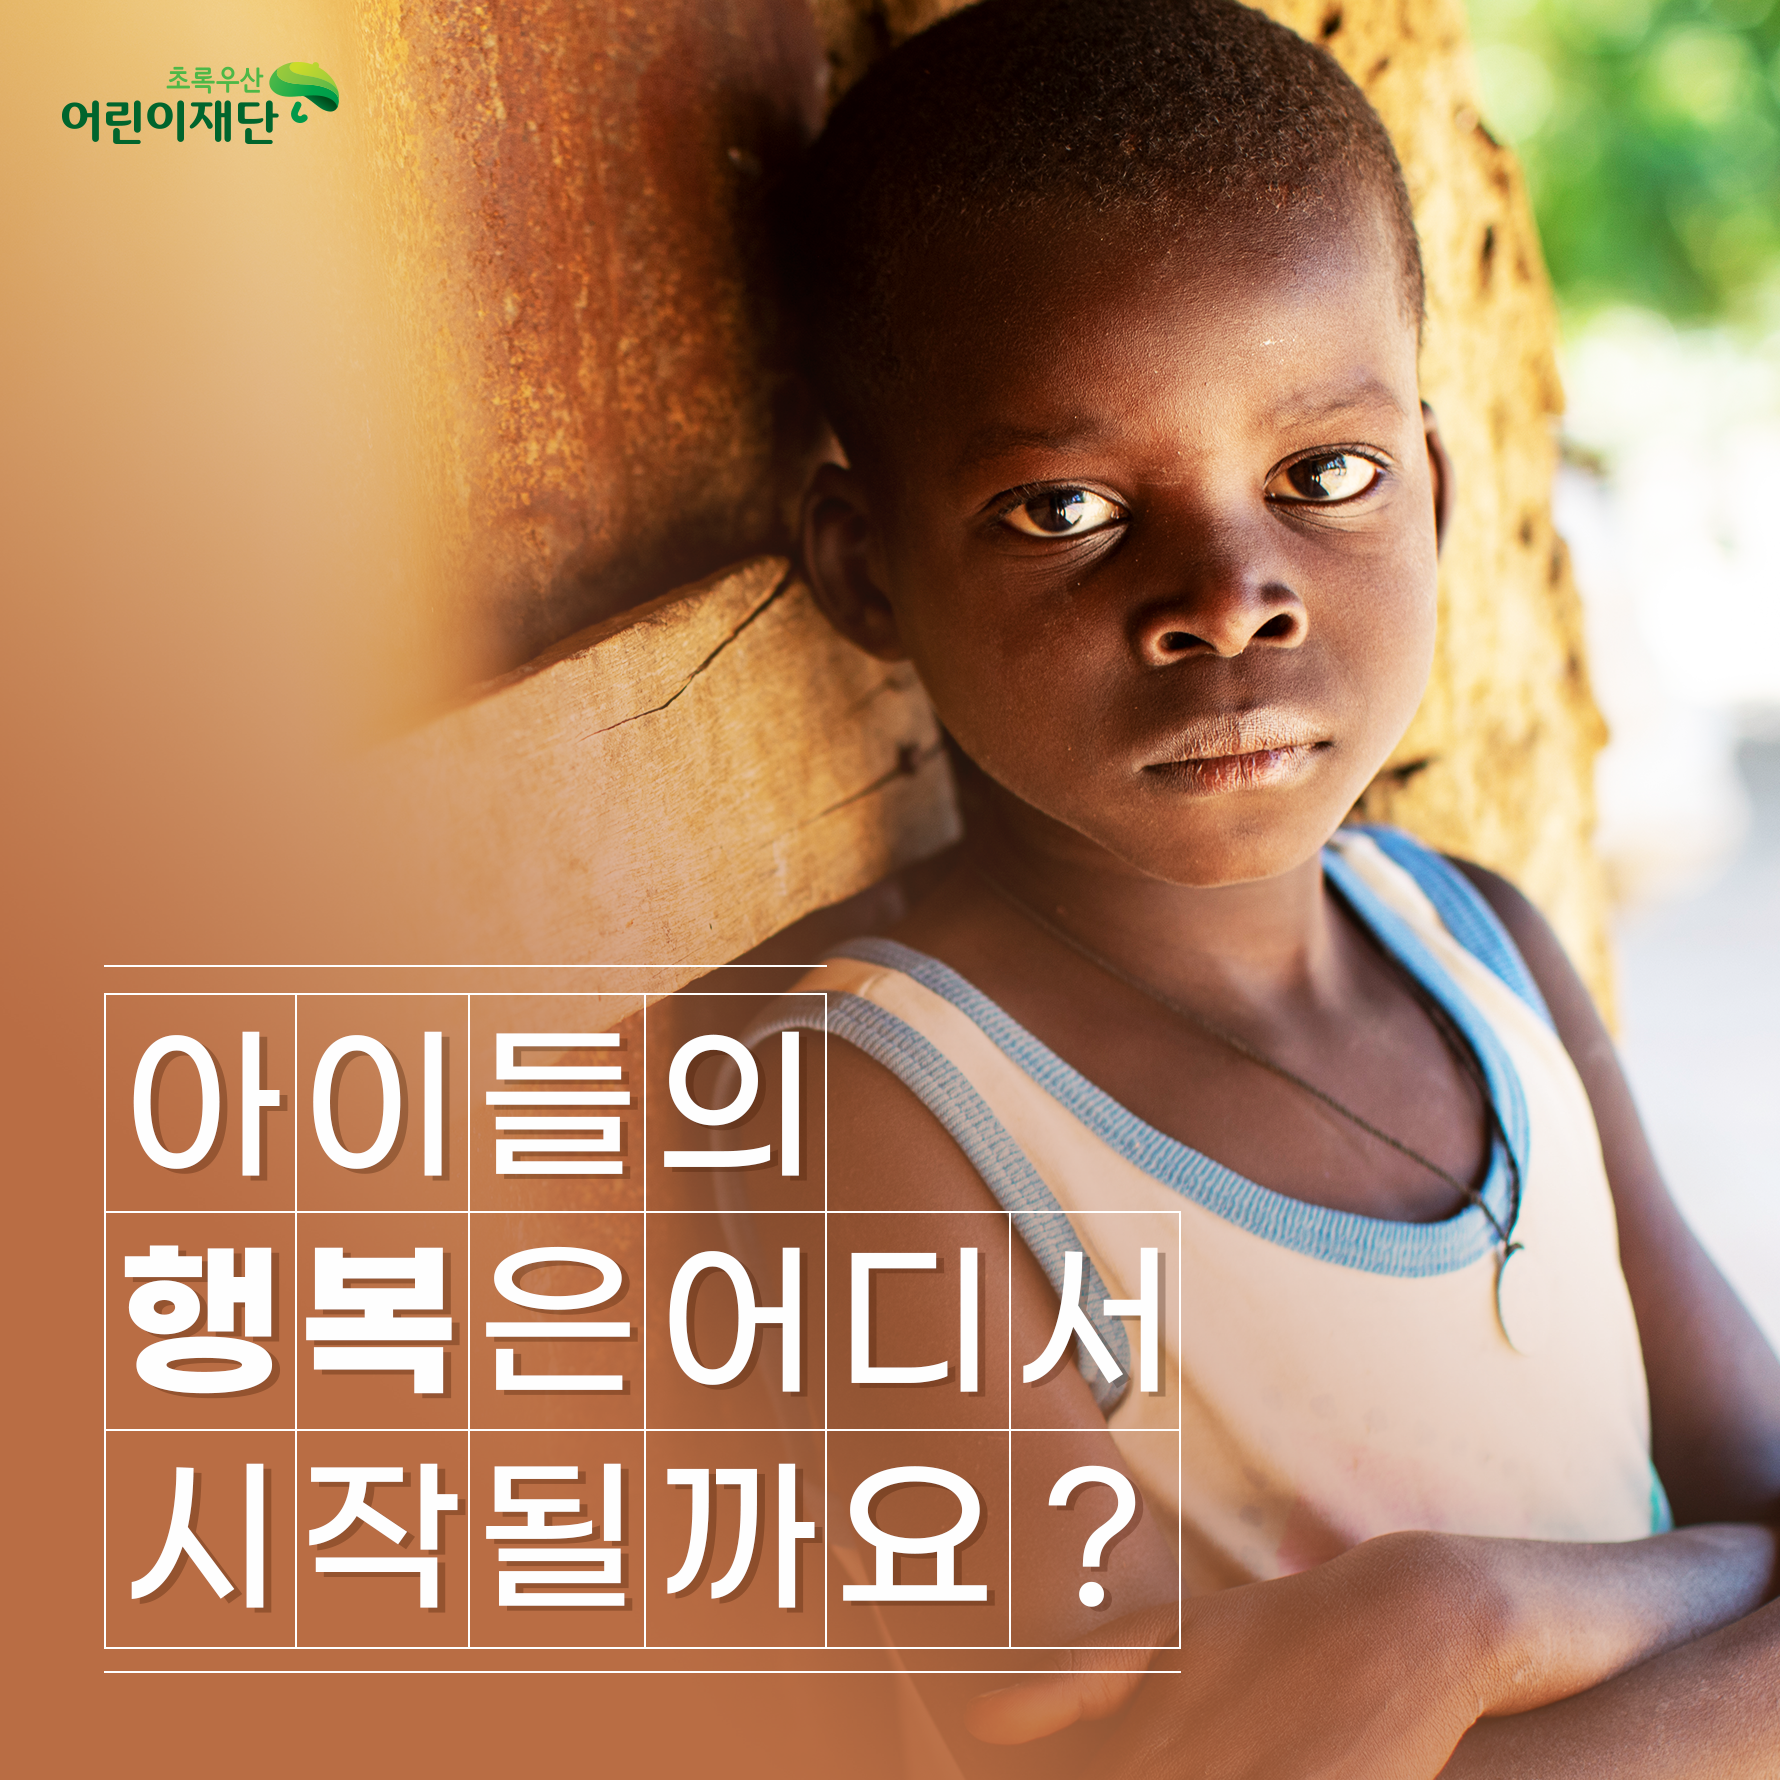 [11/19 세계 아동 학대 예방의 날] 아이들의 행복은 어디서 시작될까요?